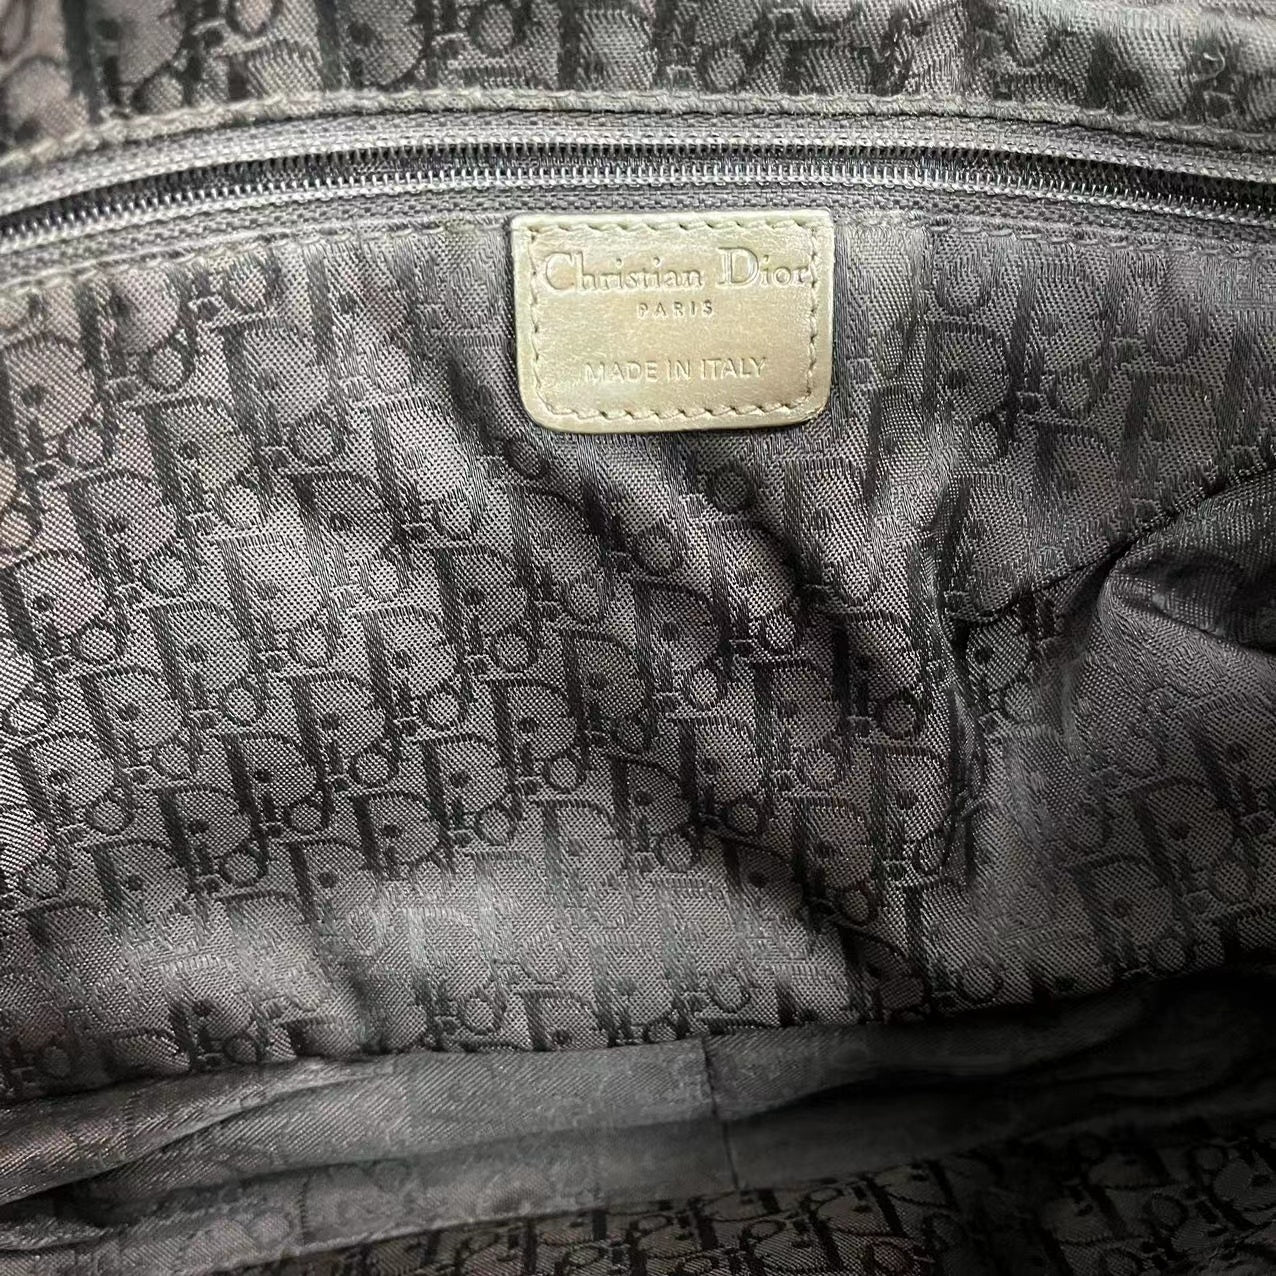 Christian Dior vintage limited edition shoulderbag